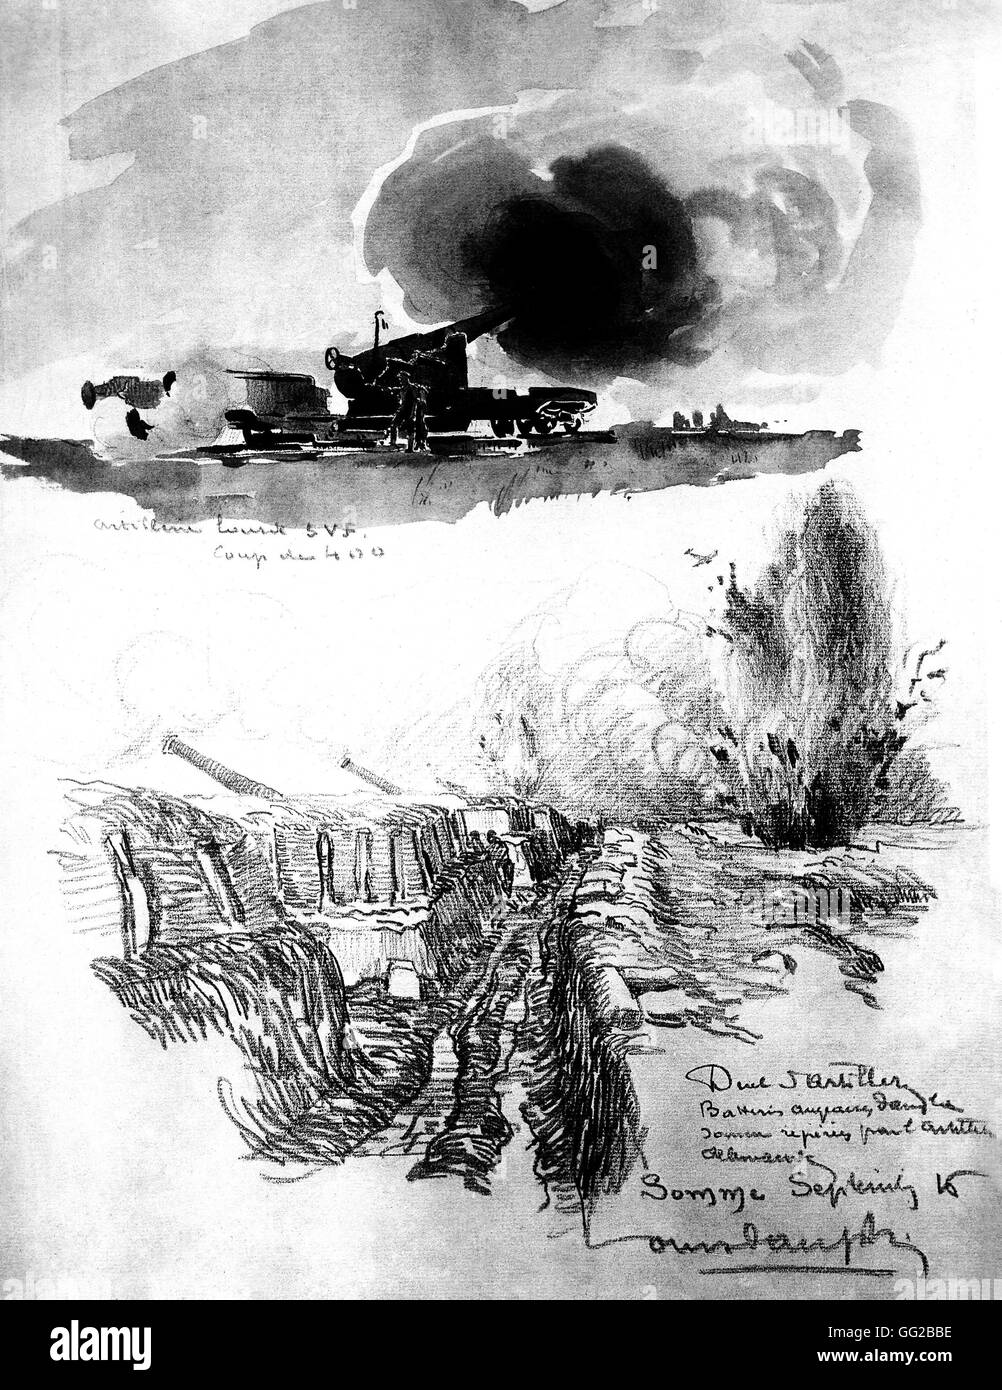 Artiglieria pesante e artiglieria Battaglia delle Somme illustrazione di Louis Dauphin Settembre 1916 Francia, I Guerra Mondiale Bruxelles, il Museo della Guerra Foto Stock